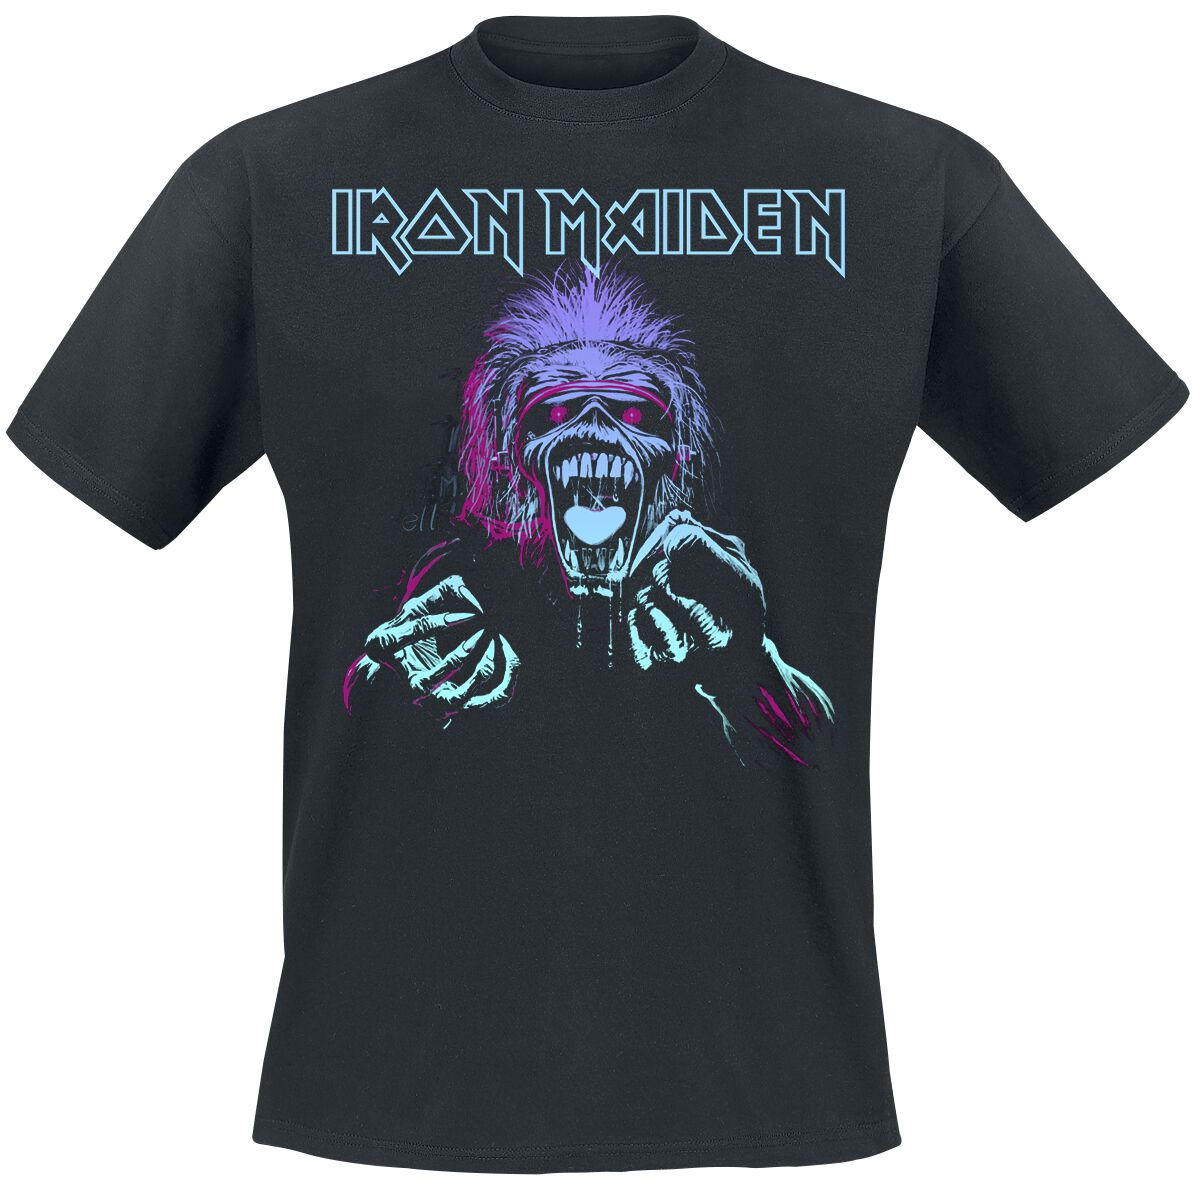 Iron Maiden T-Shirt - Pastel Eddie - S bis 4XL - für Männer - Größe M - schwarz  - Lizenziertes Merchandise!